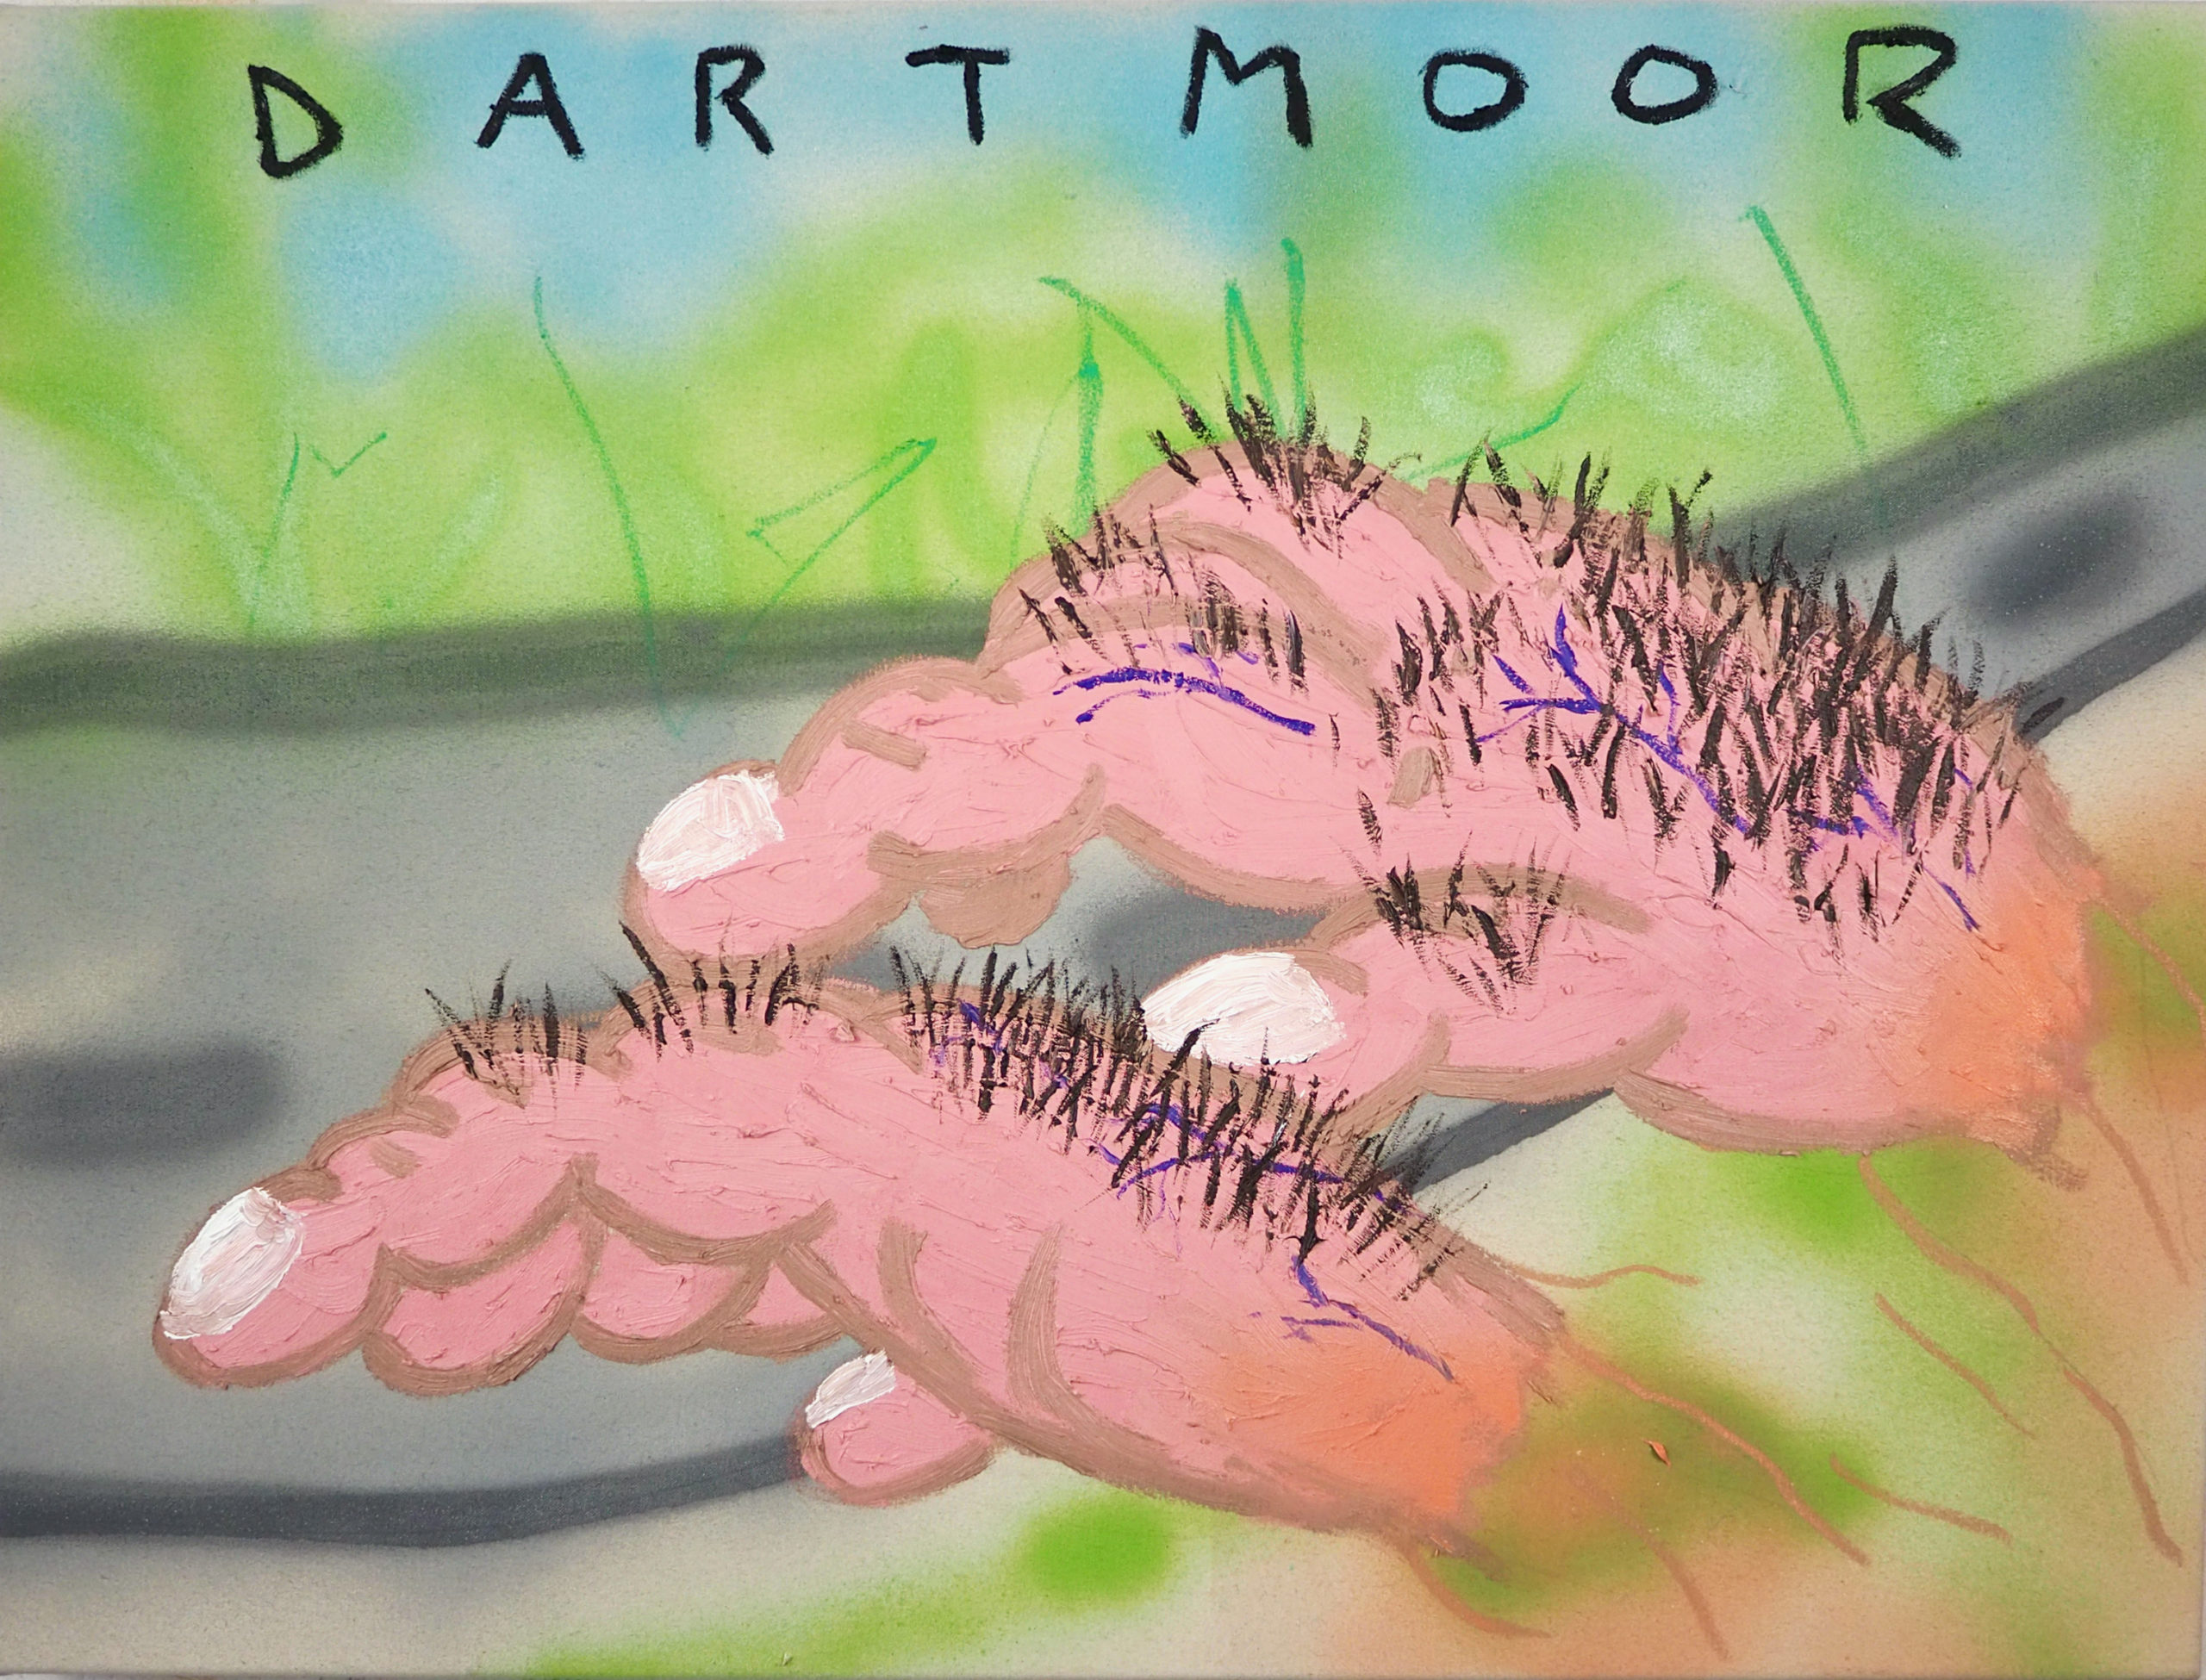 The Hairy Hands of Dartmoor